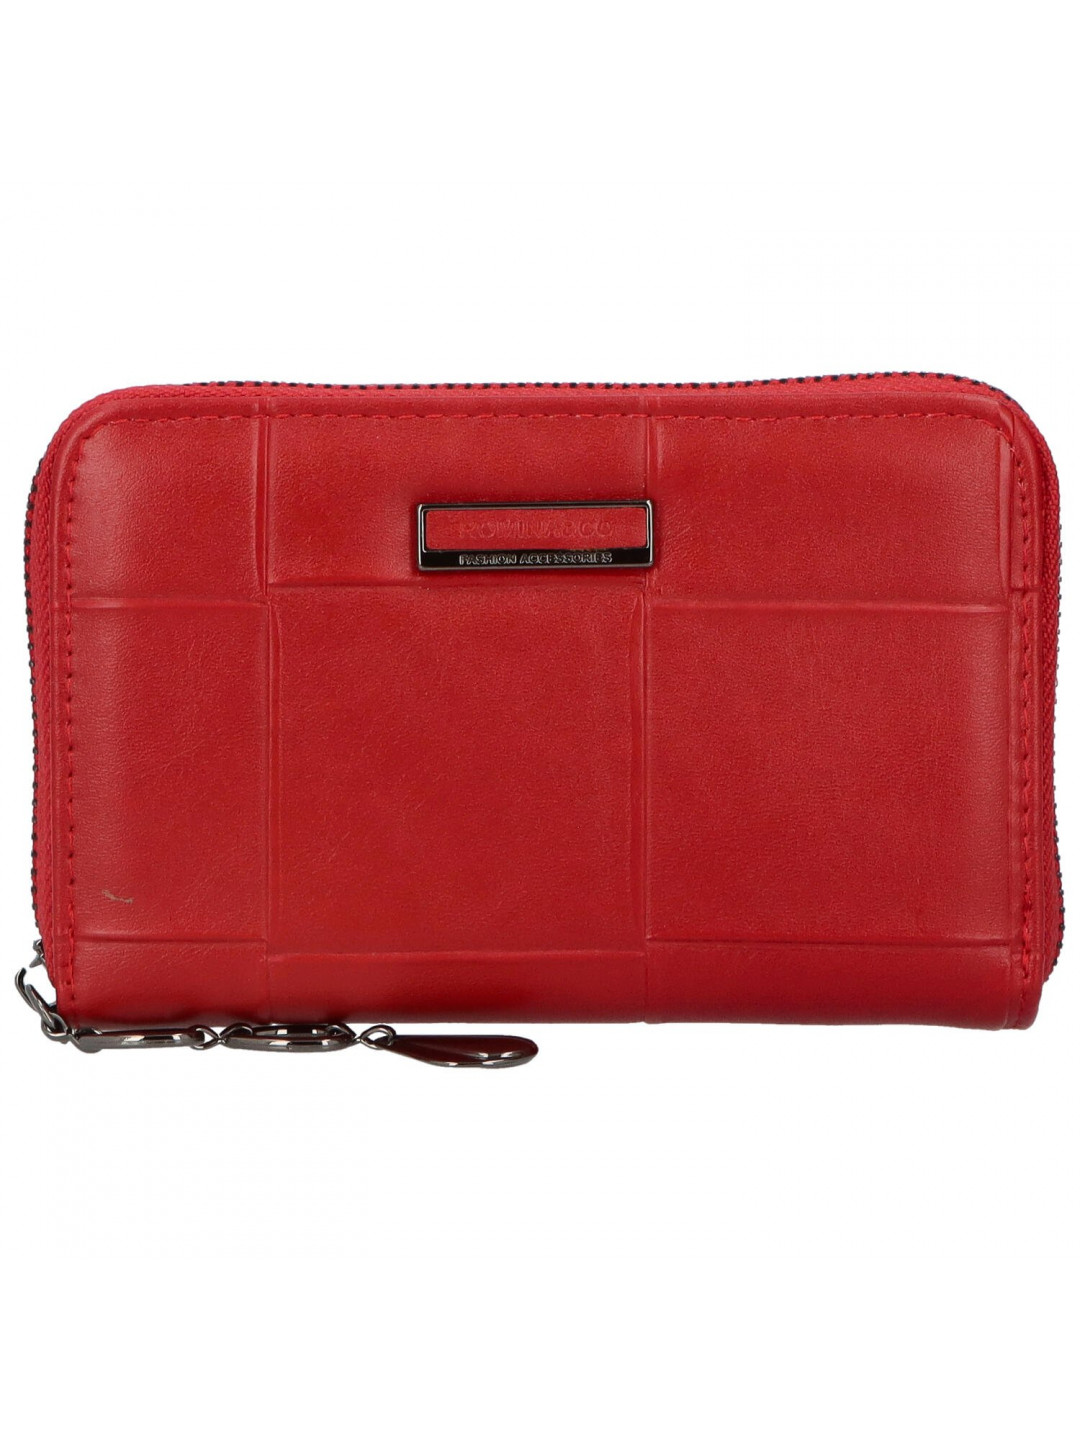 Praktická mladistvá dámská koženková peněženka Manni červená